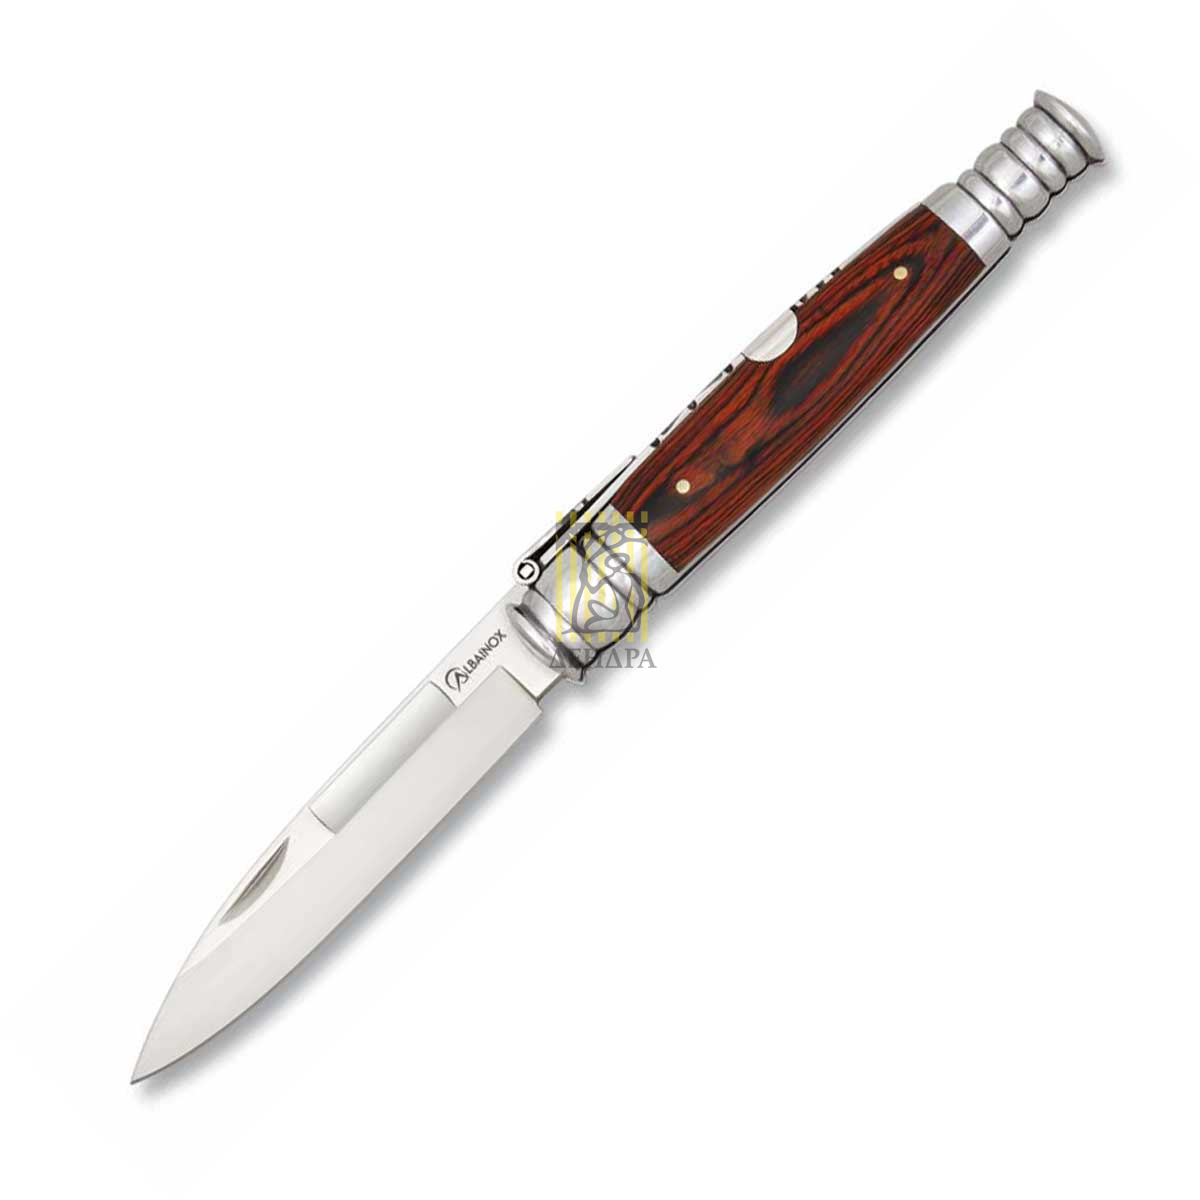 Нож складной Punta Espada, длина клинка 9 см, рукоять красное дерево, подарочная упаковка